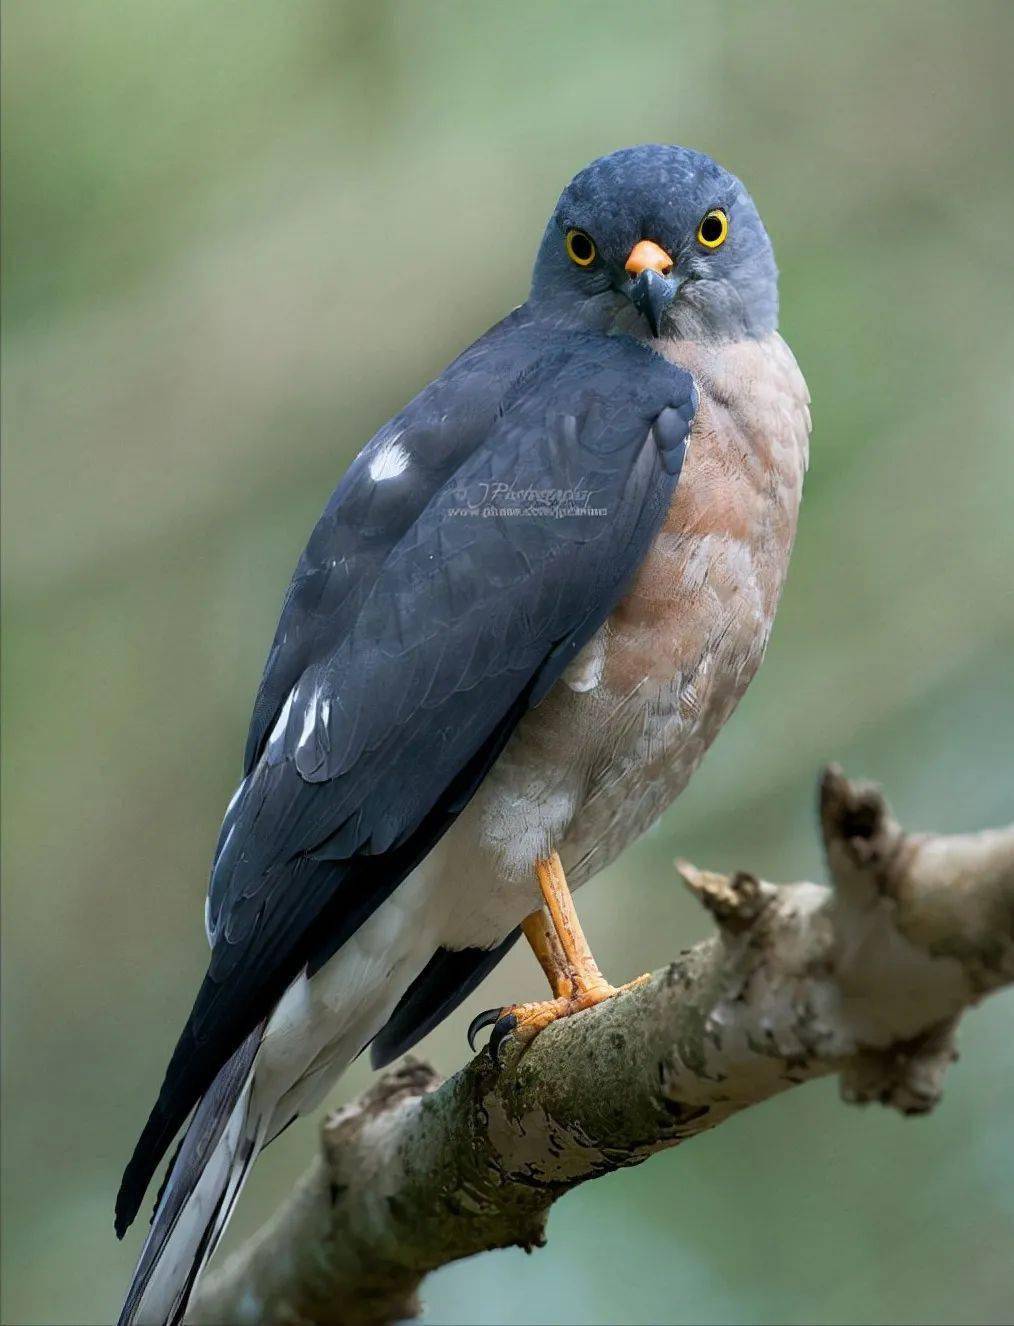 松雀鹰是一种在中国亚热带区域较为常见的林栖小型鹰类,松雀鹰体小